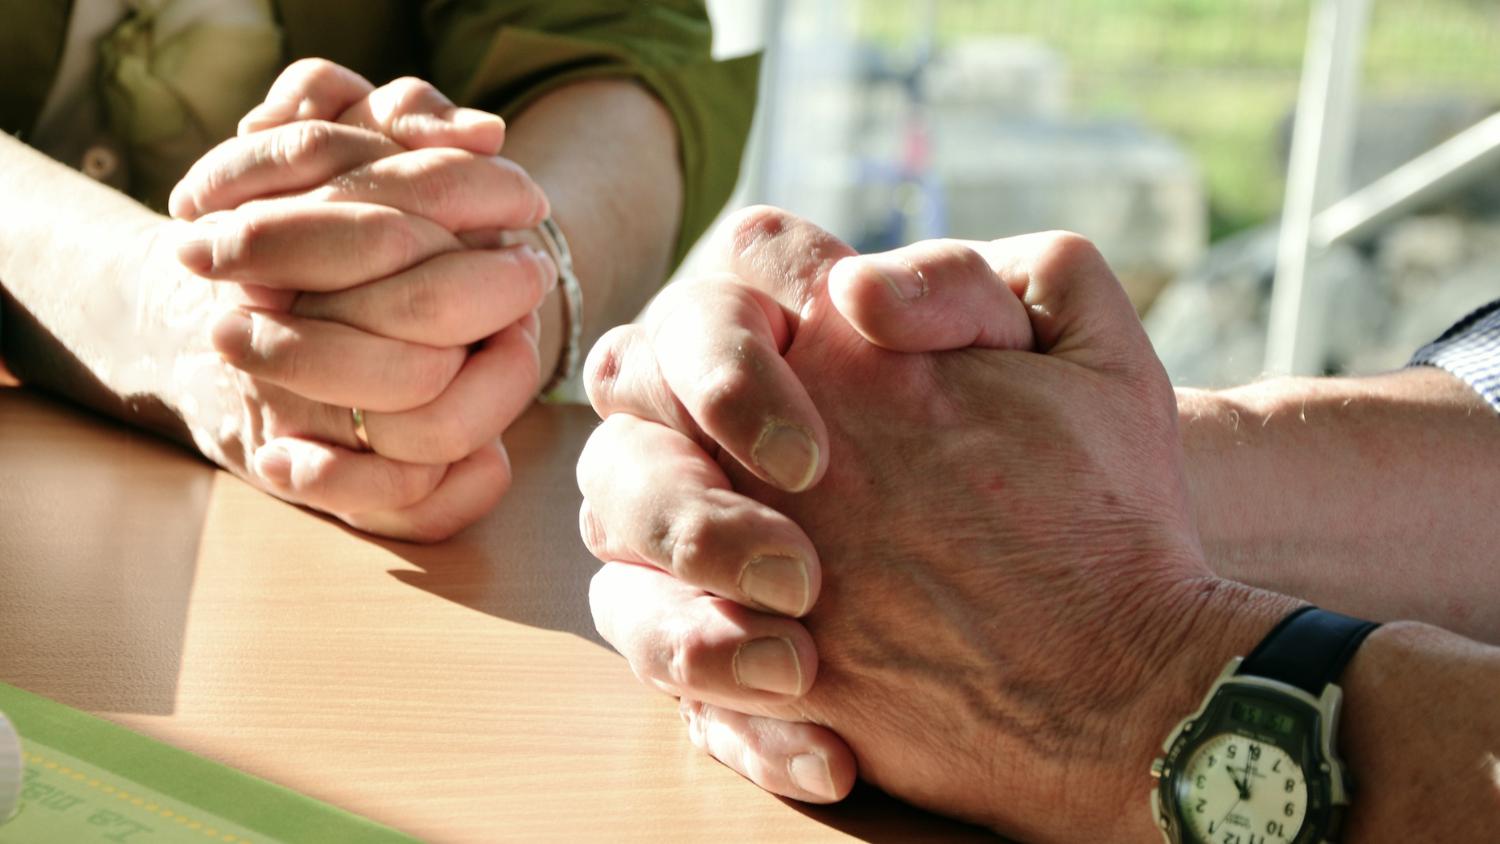 Gemeinsam beten als verbindendes Element der Hausgottesdienste. (c) www.pixabay.com